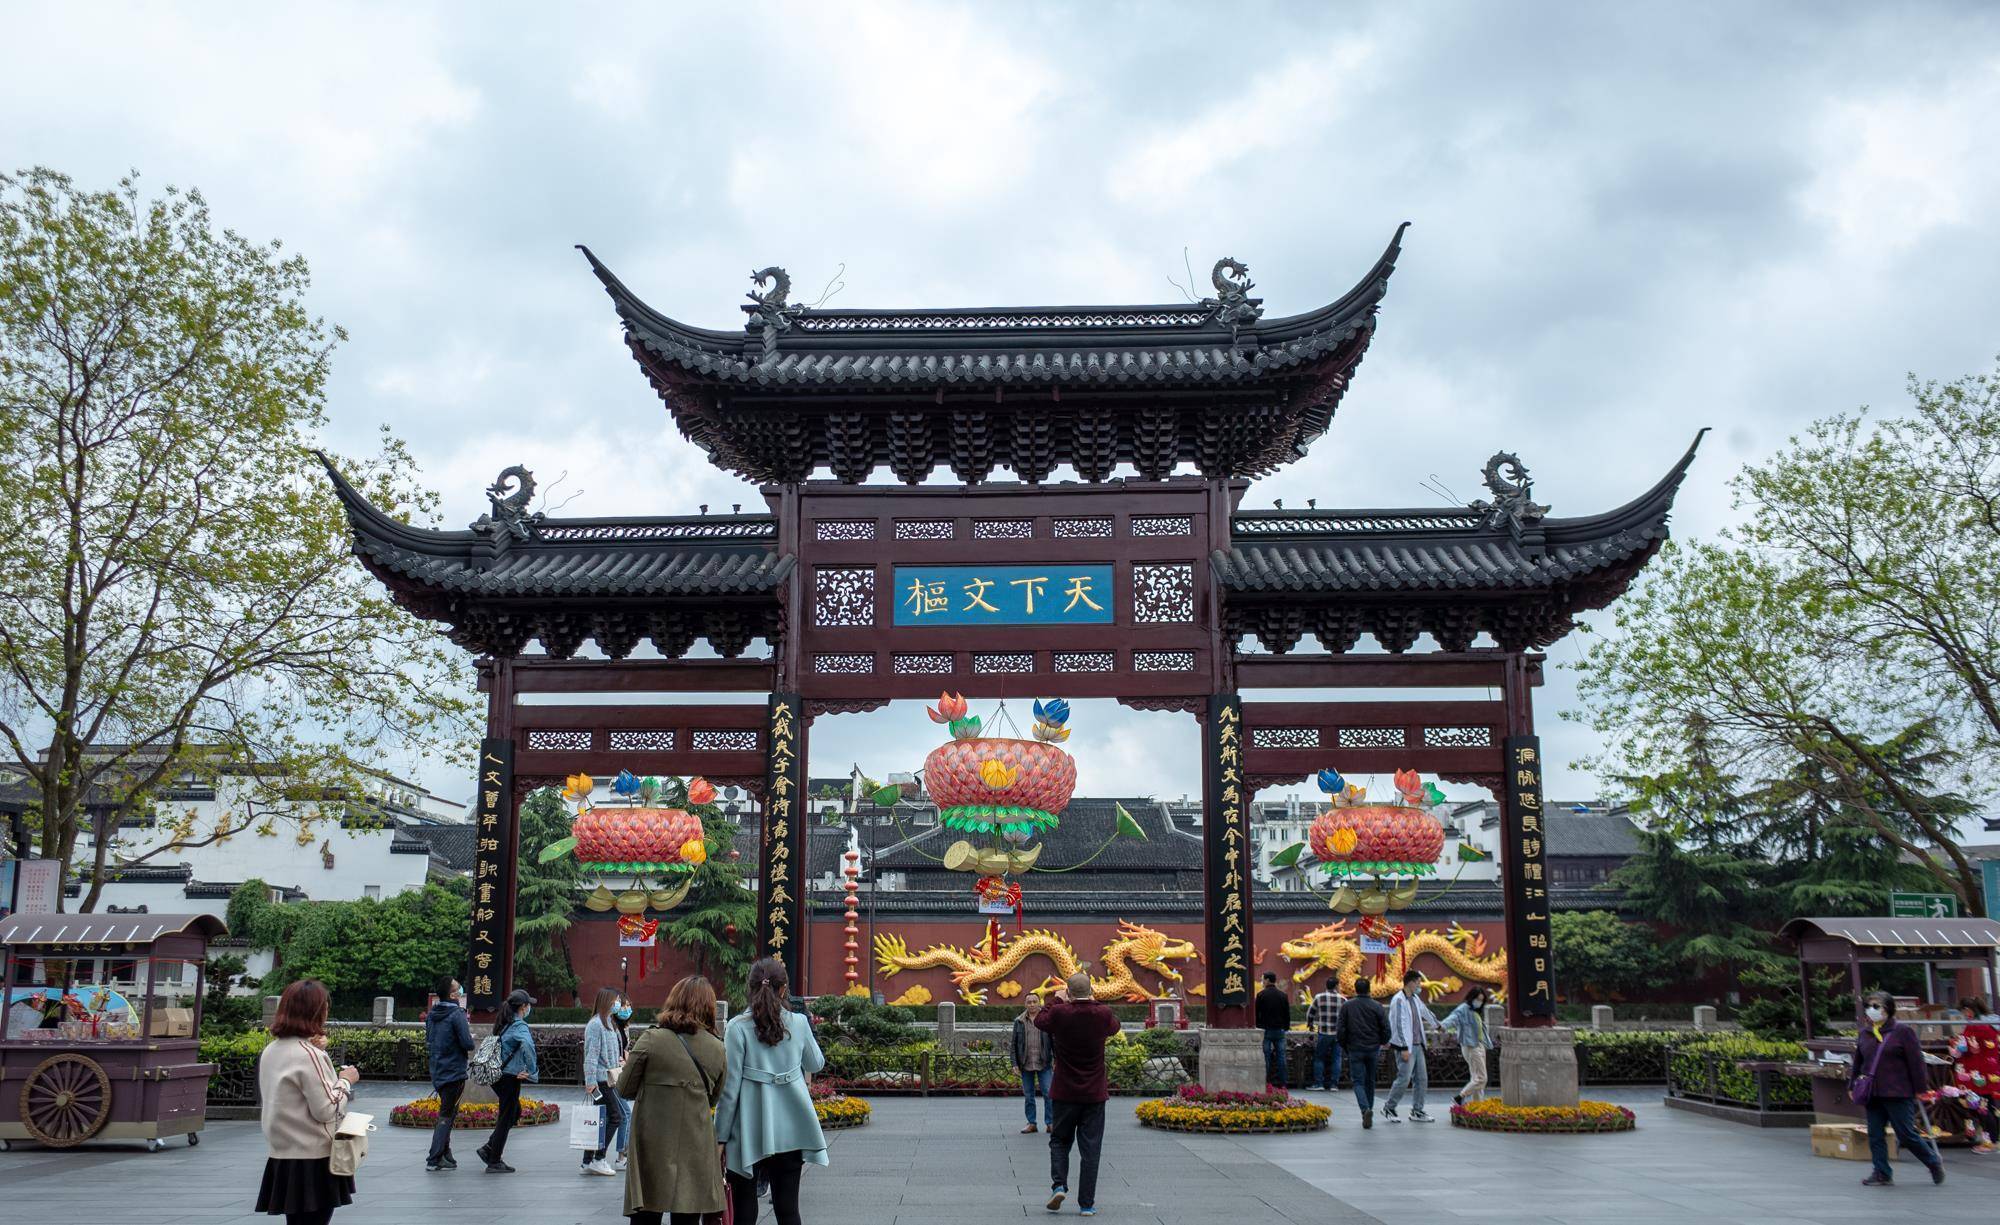 南京夫子庙,免费的国家5a级旅游景区,周末游人络绎不绝非常热闹